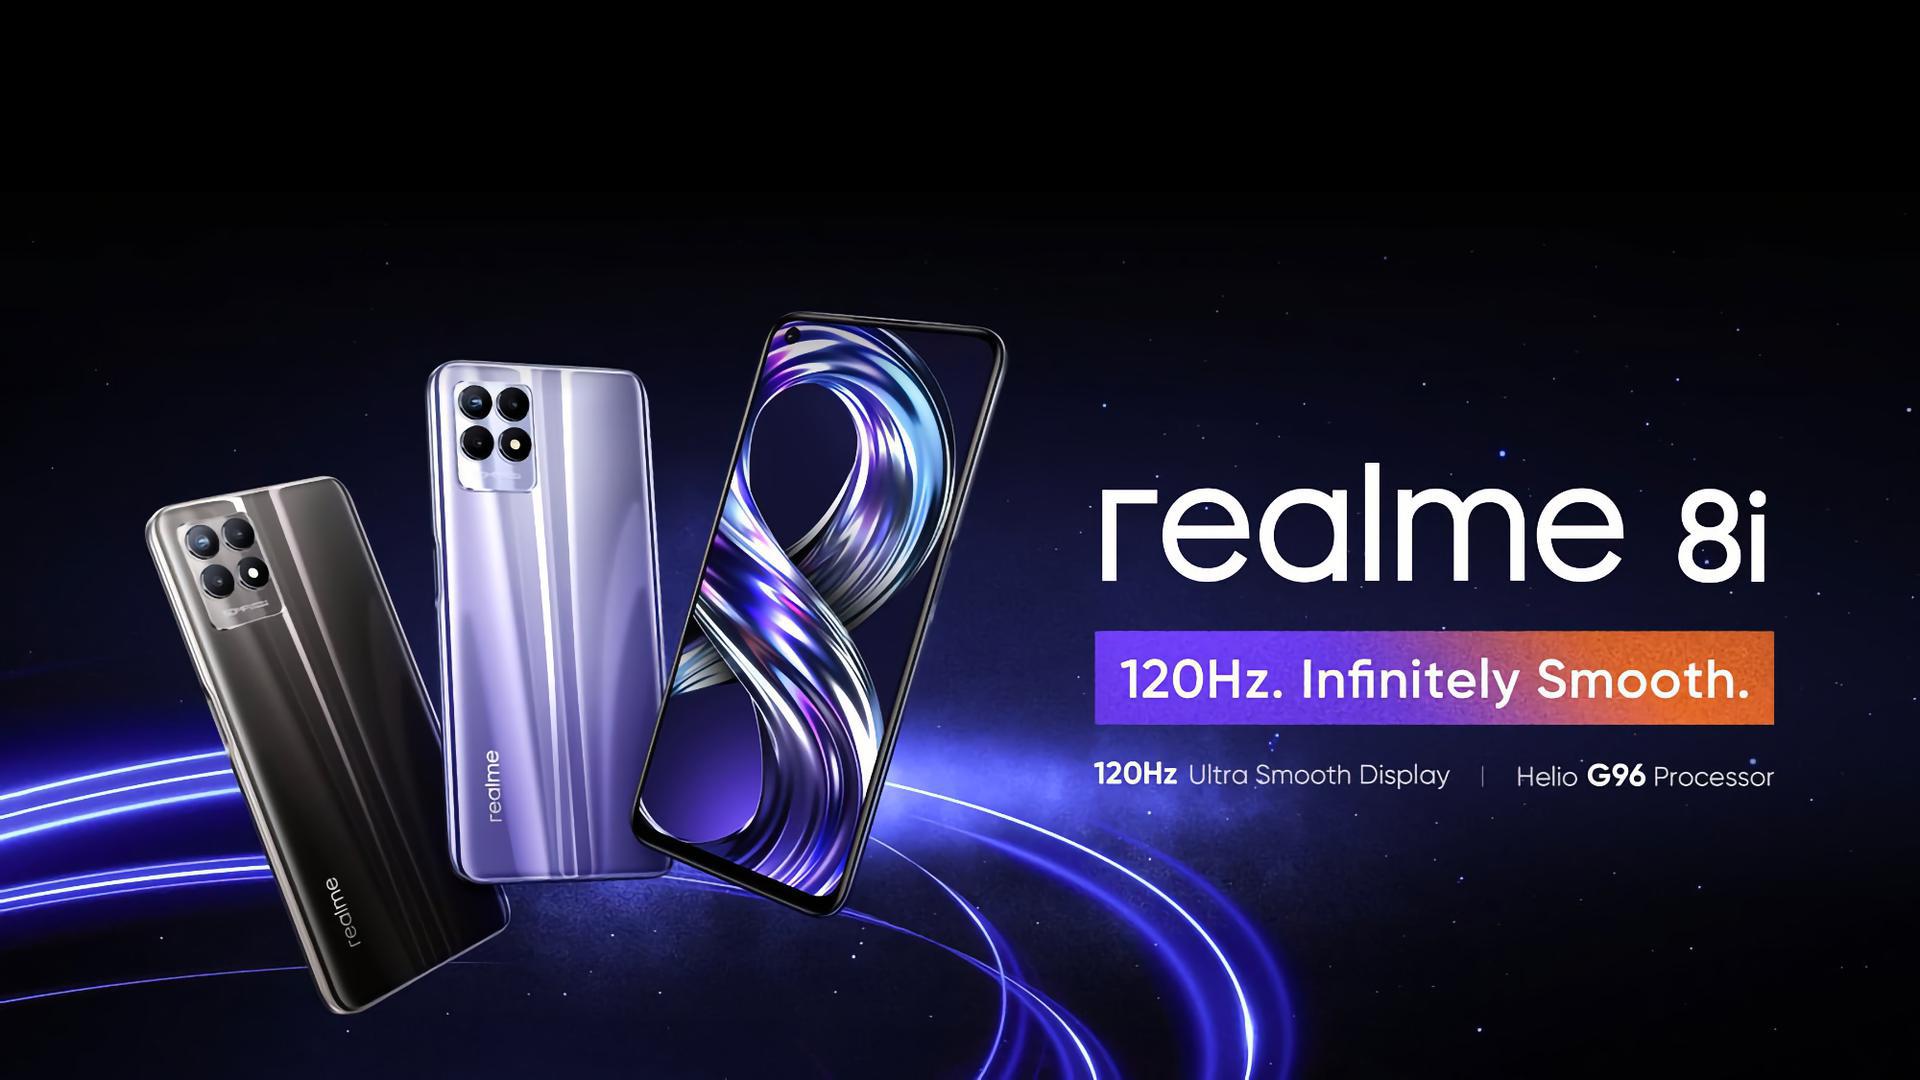 Es ist offiziell: Realme 8i mit NFC, 120Hz-Bildschirm und MediaTek Helio G96-Chip wird am 14. Oktober in Europa eingeführt